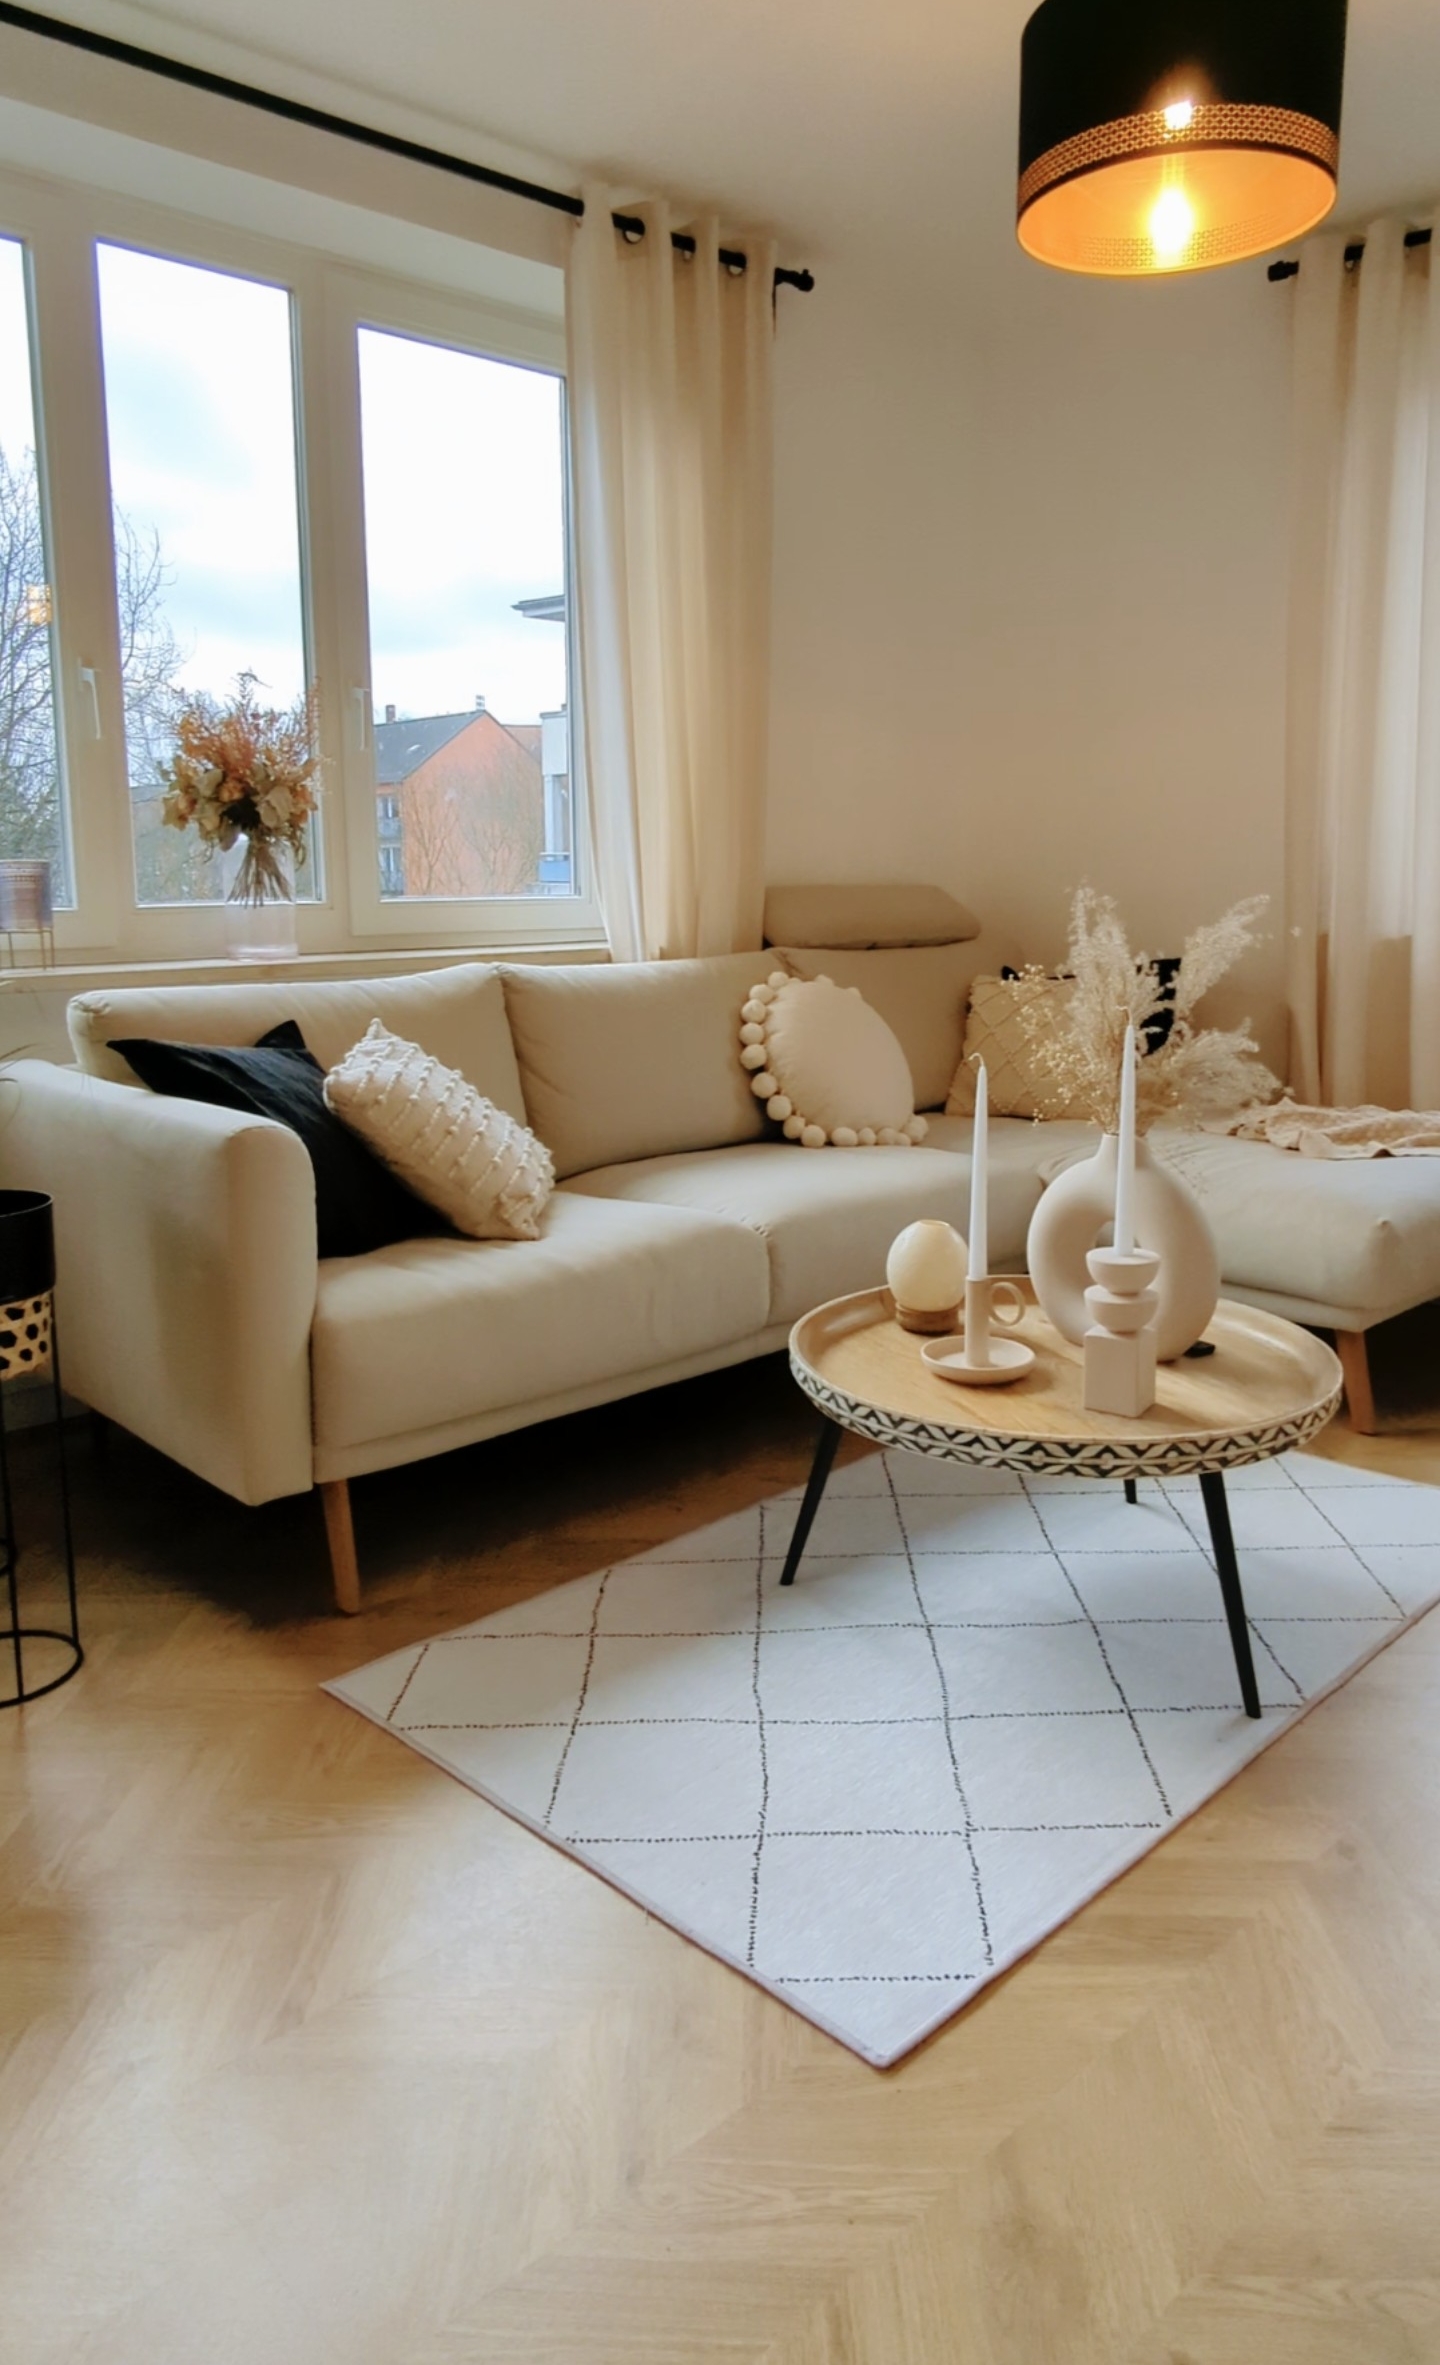 Wohnzimmer
#hell #beige #interiordesign  #blackaccessories #minimalism,#beigedecor #homestyle  #scandinaviandesign